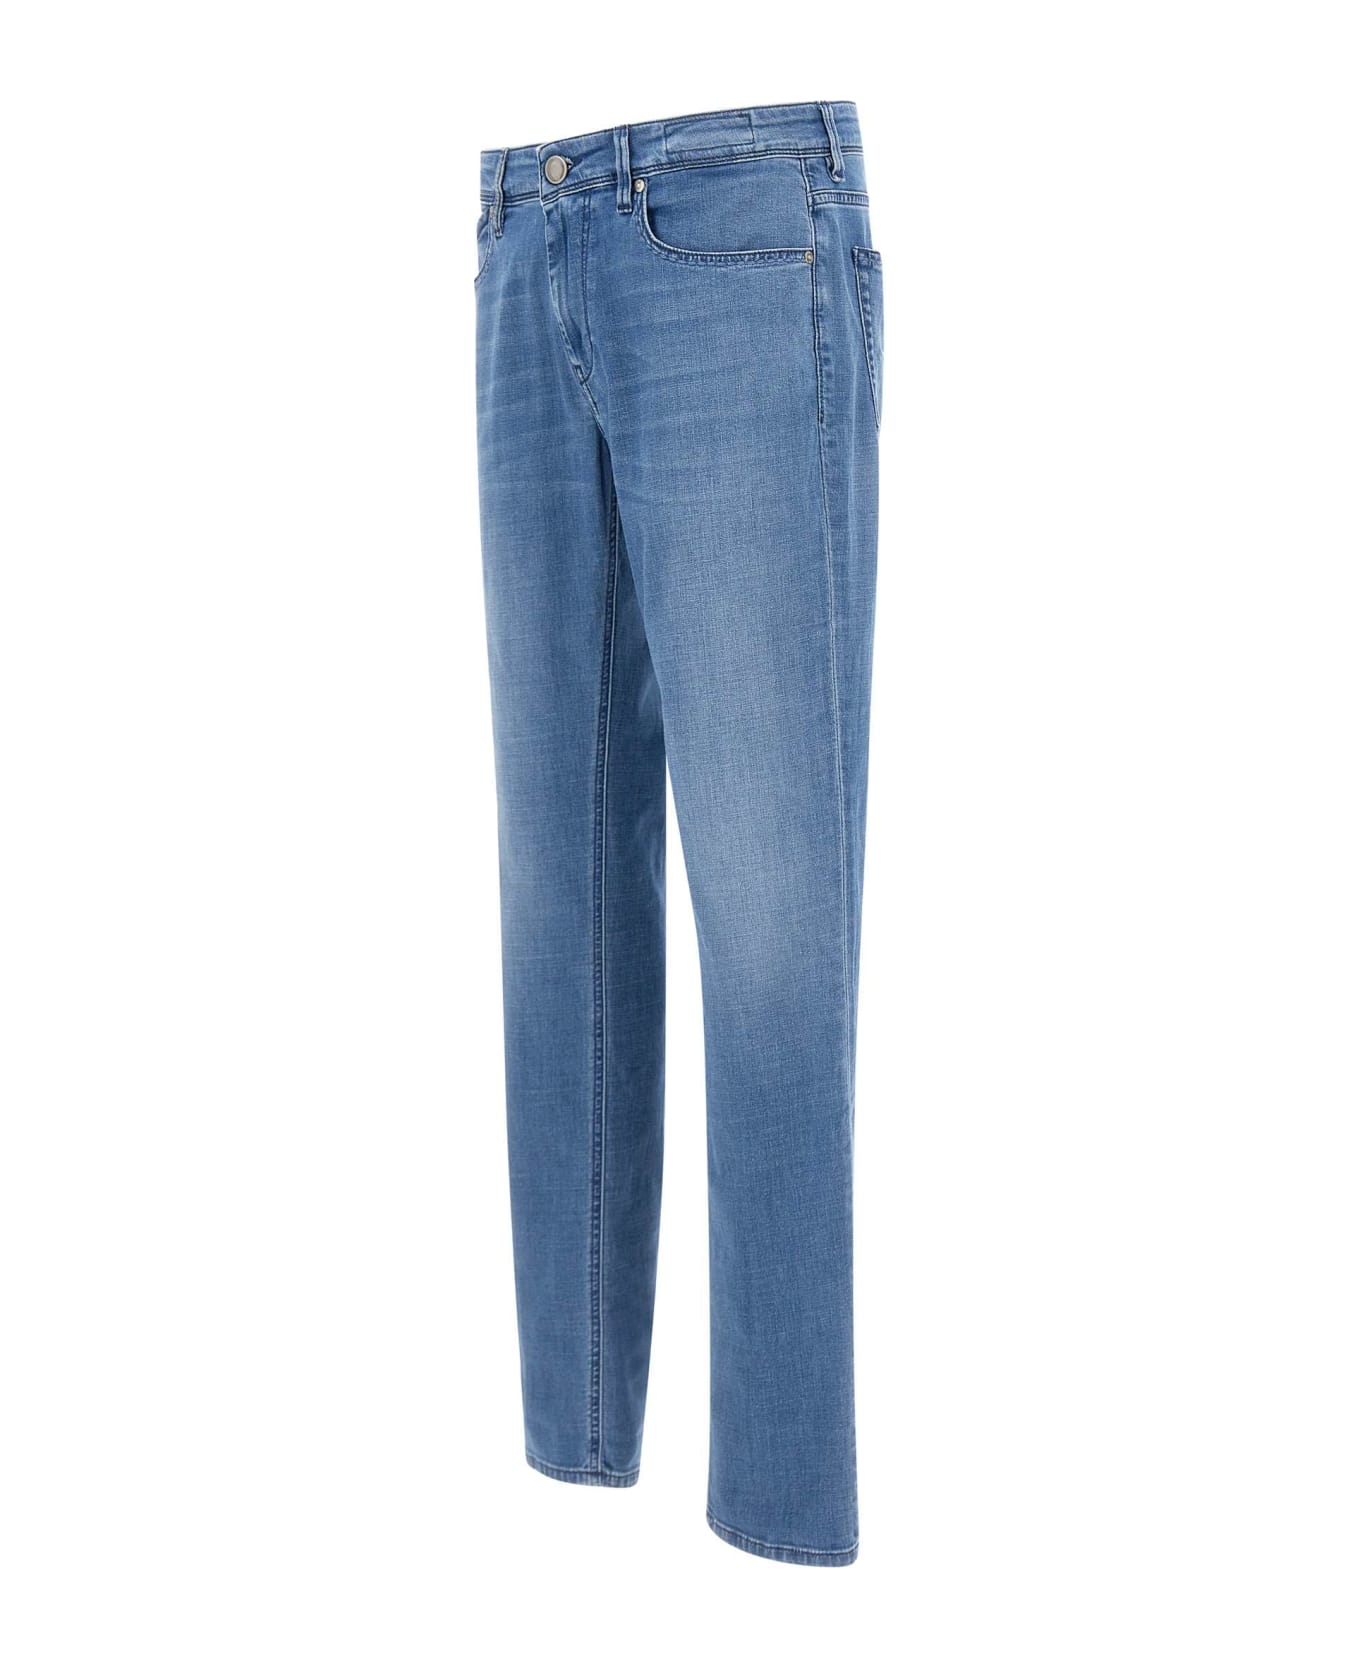 Re-HasH "rubens Z" Jeans - BLUE